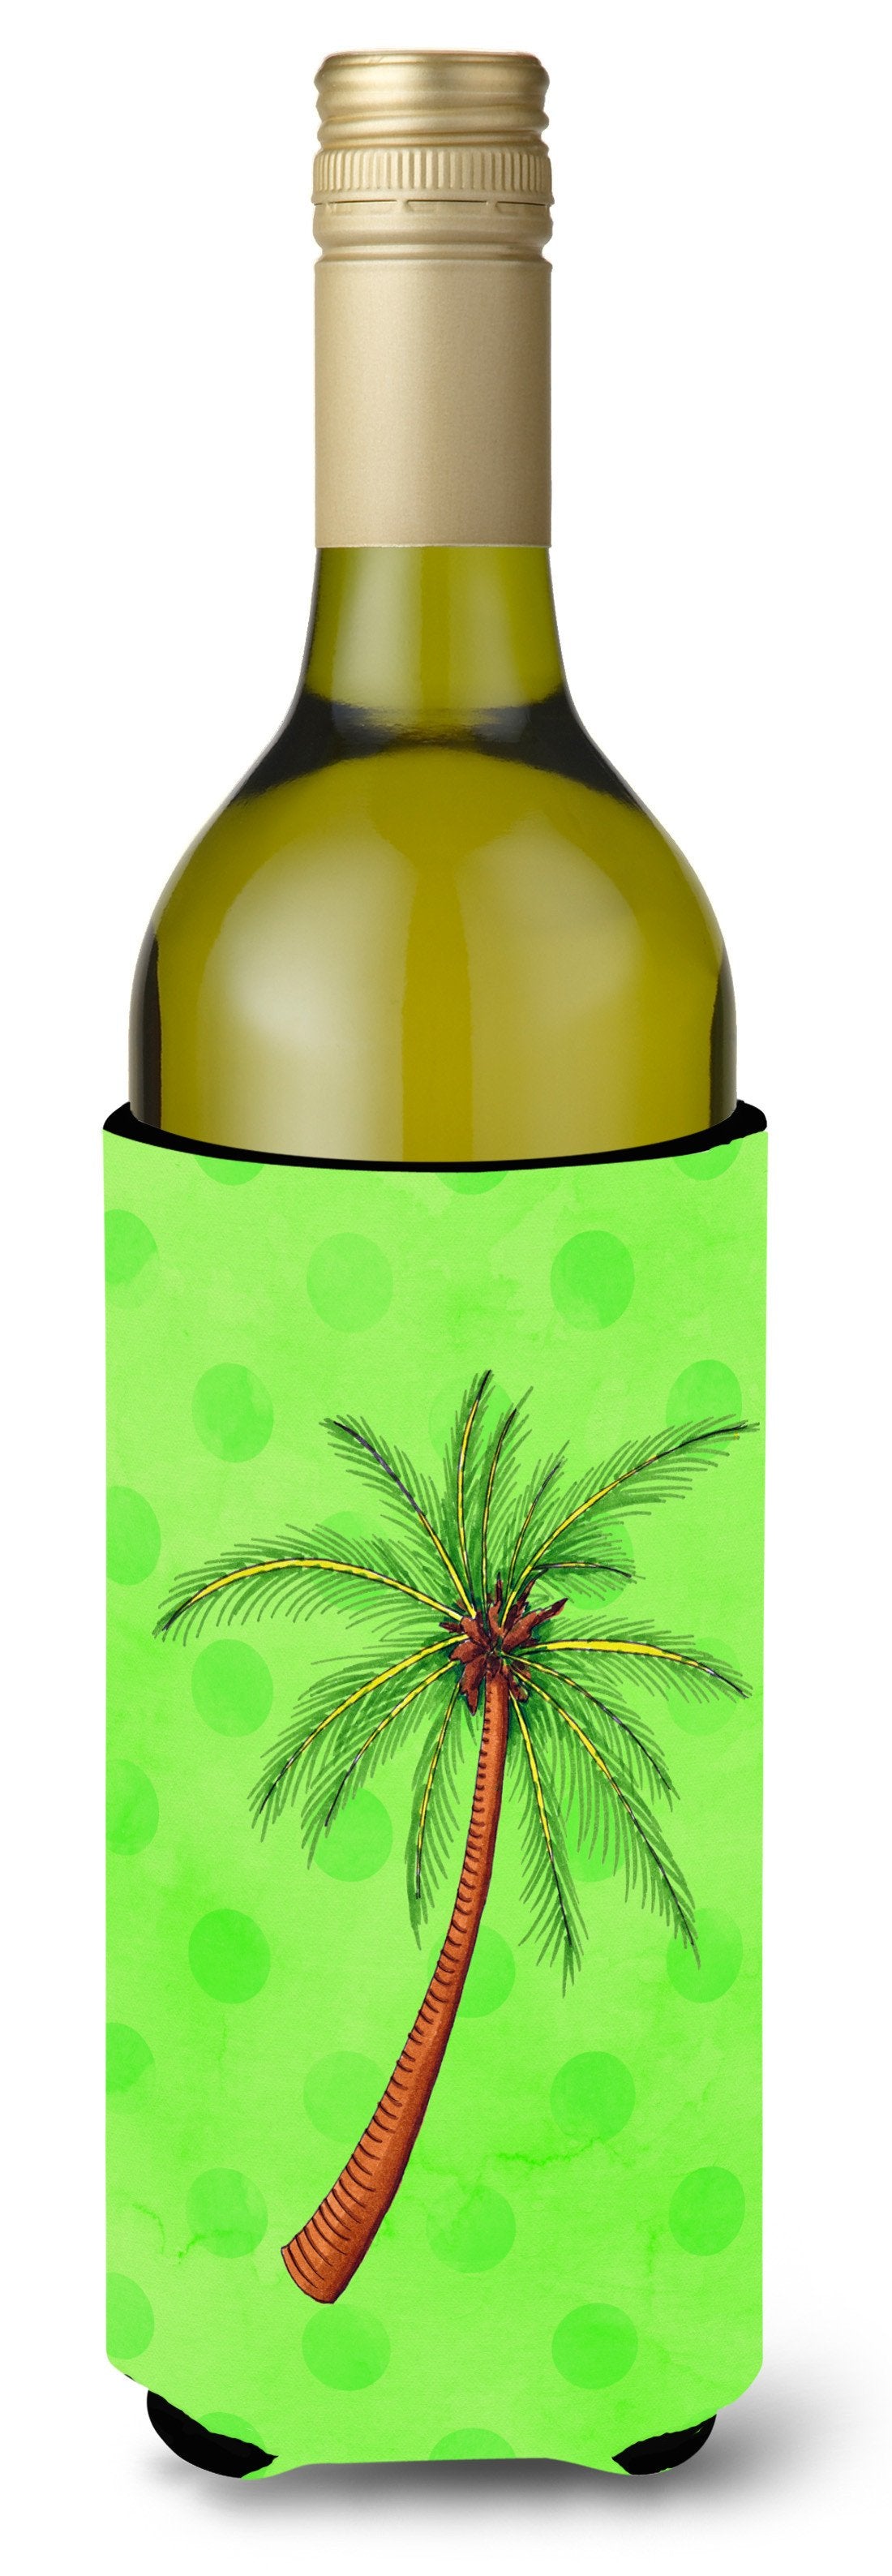 Palm Tree Green Polkadot Wine Bottle Beverge Insulator Hugger BB8165LITERK by Caroline's Treasures